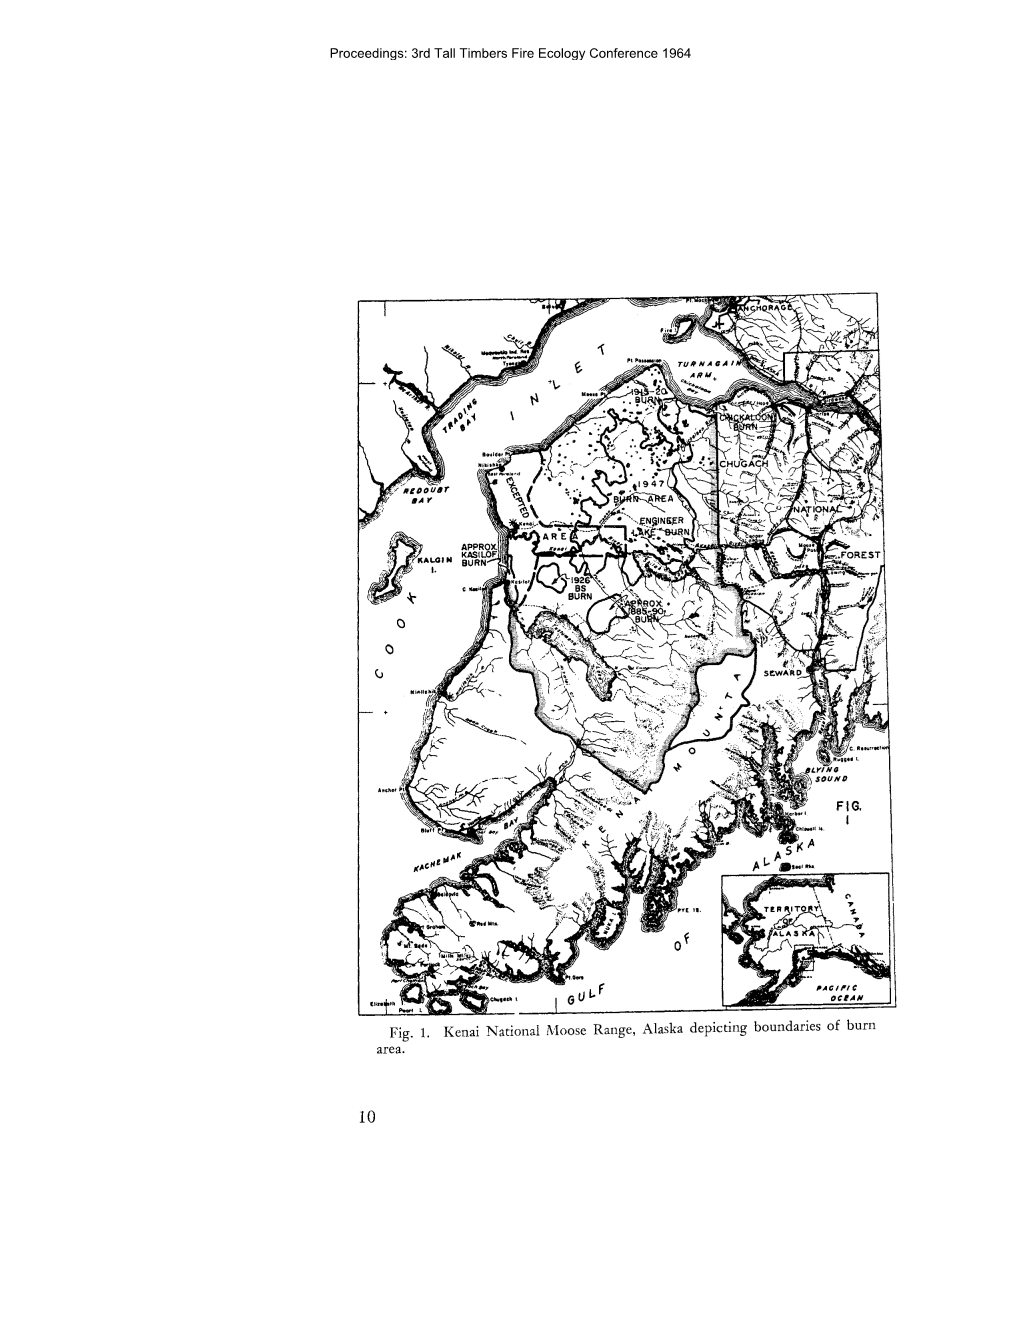 Fig. 1. Kenai National Moose Range, Alaska Depicting Boundaries of Burn Area